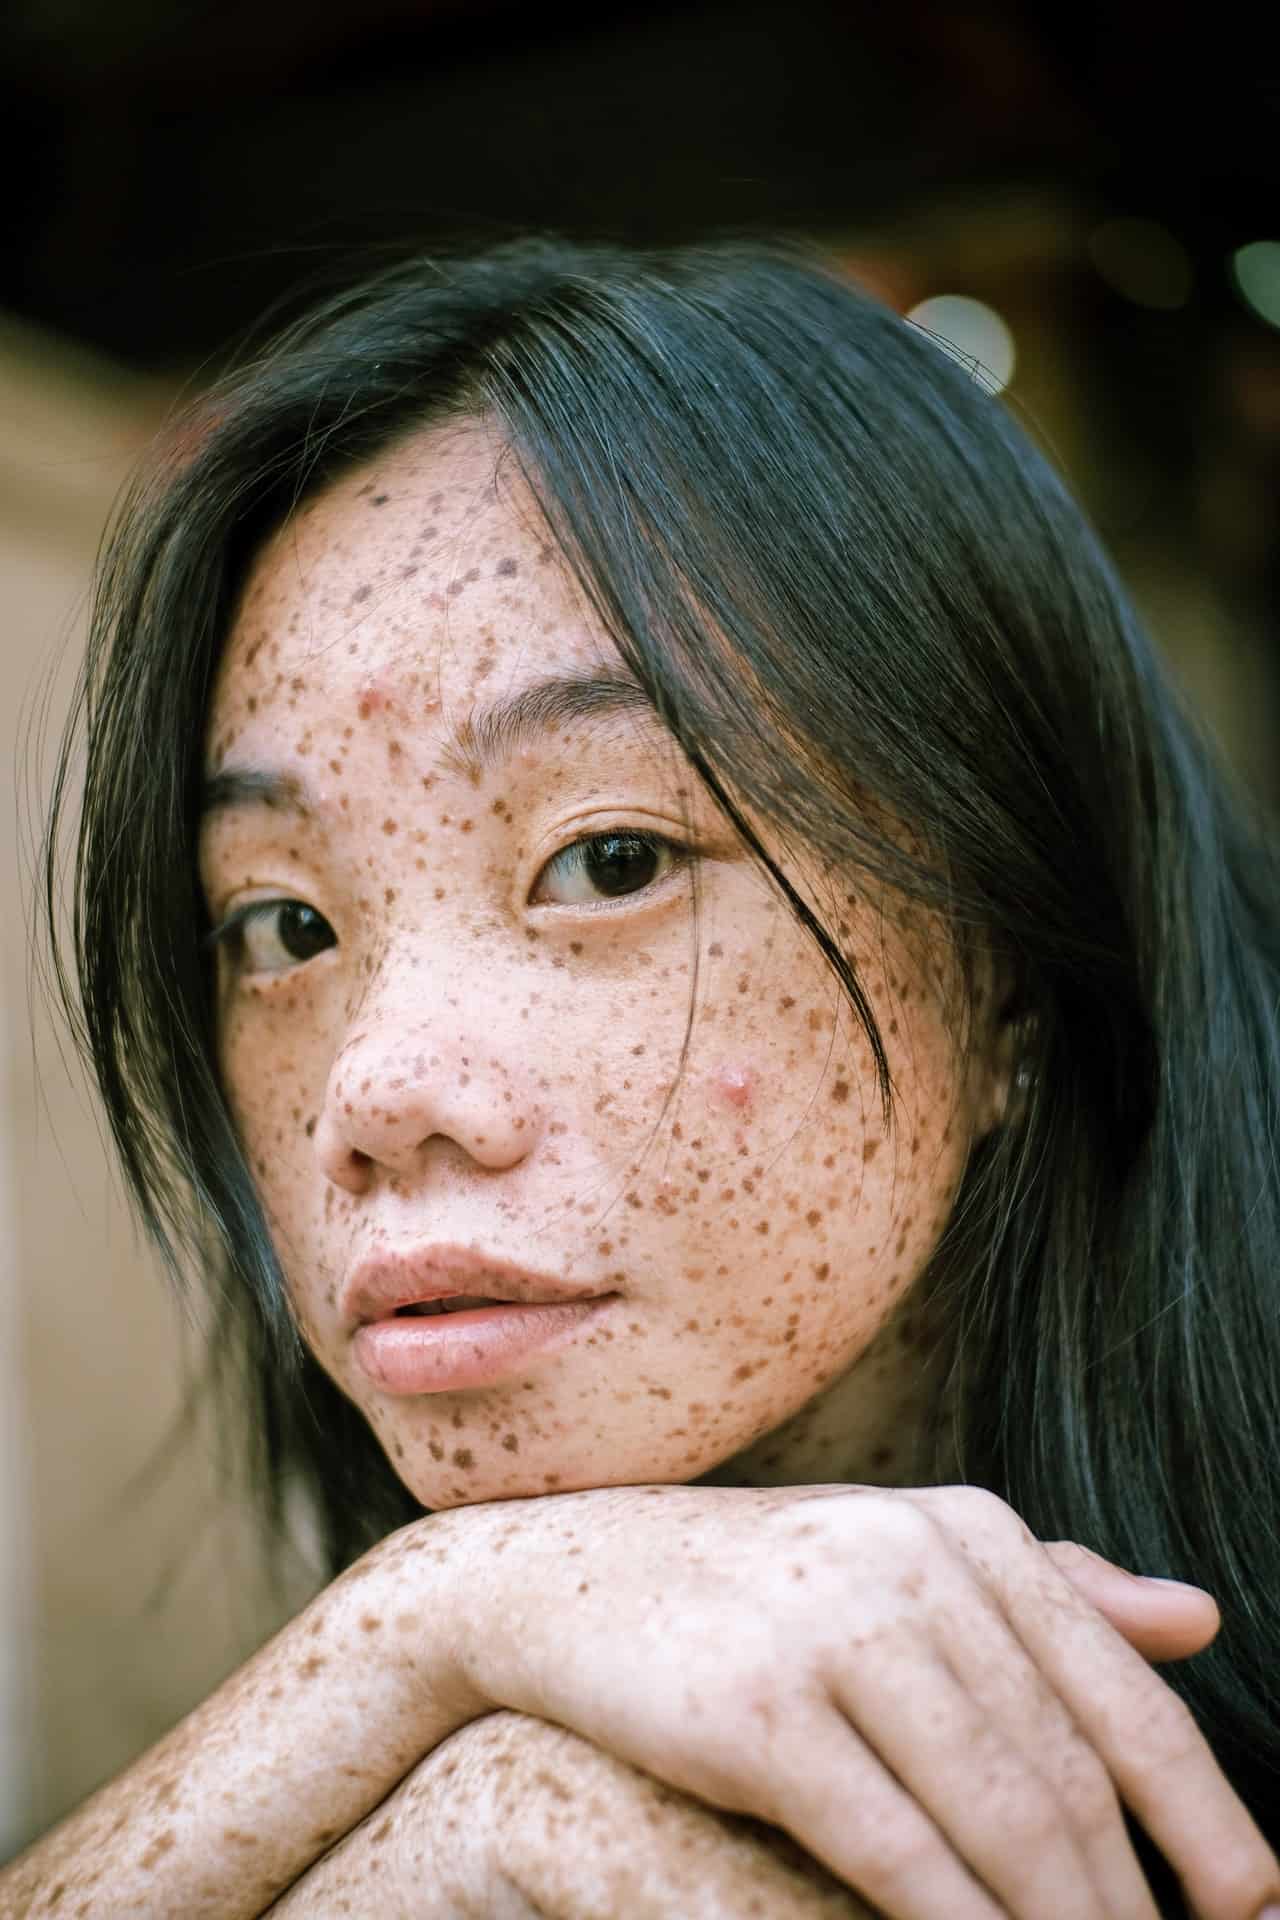 Teenage acne